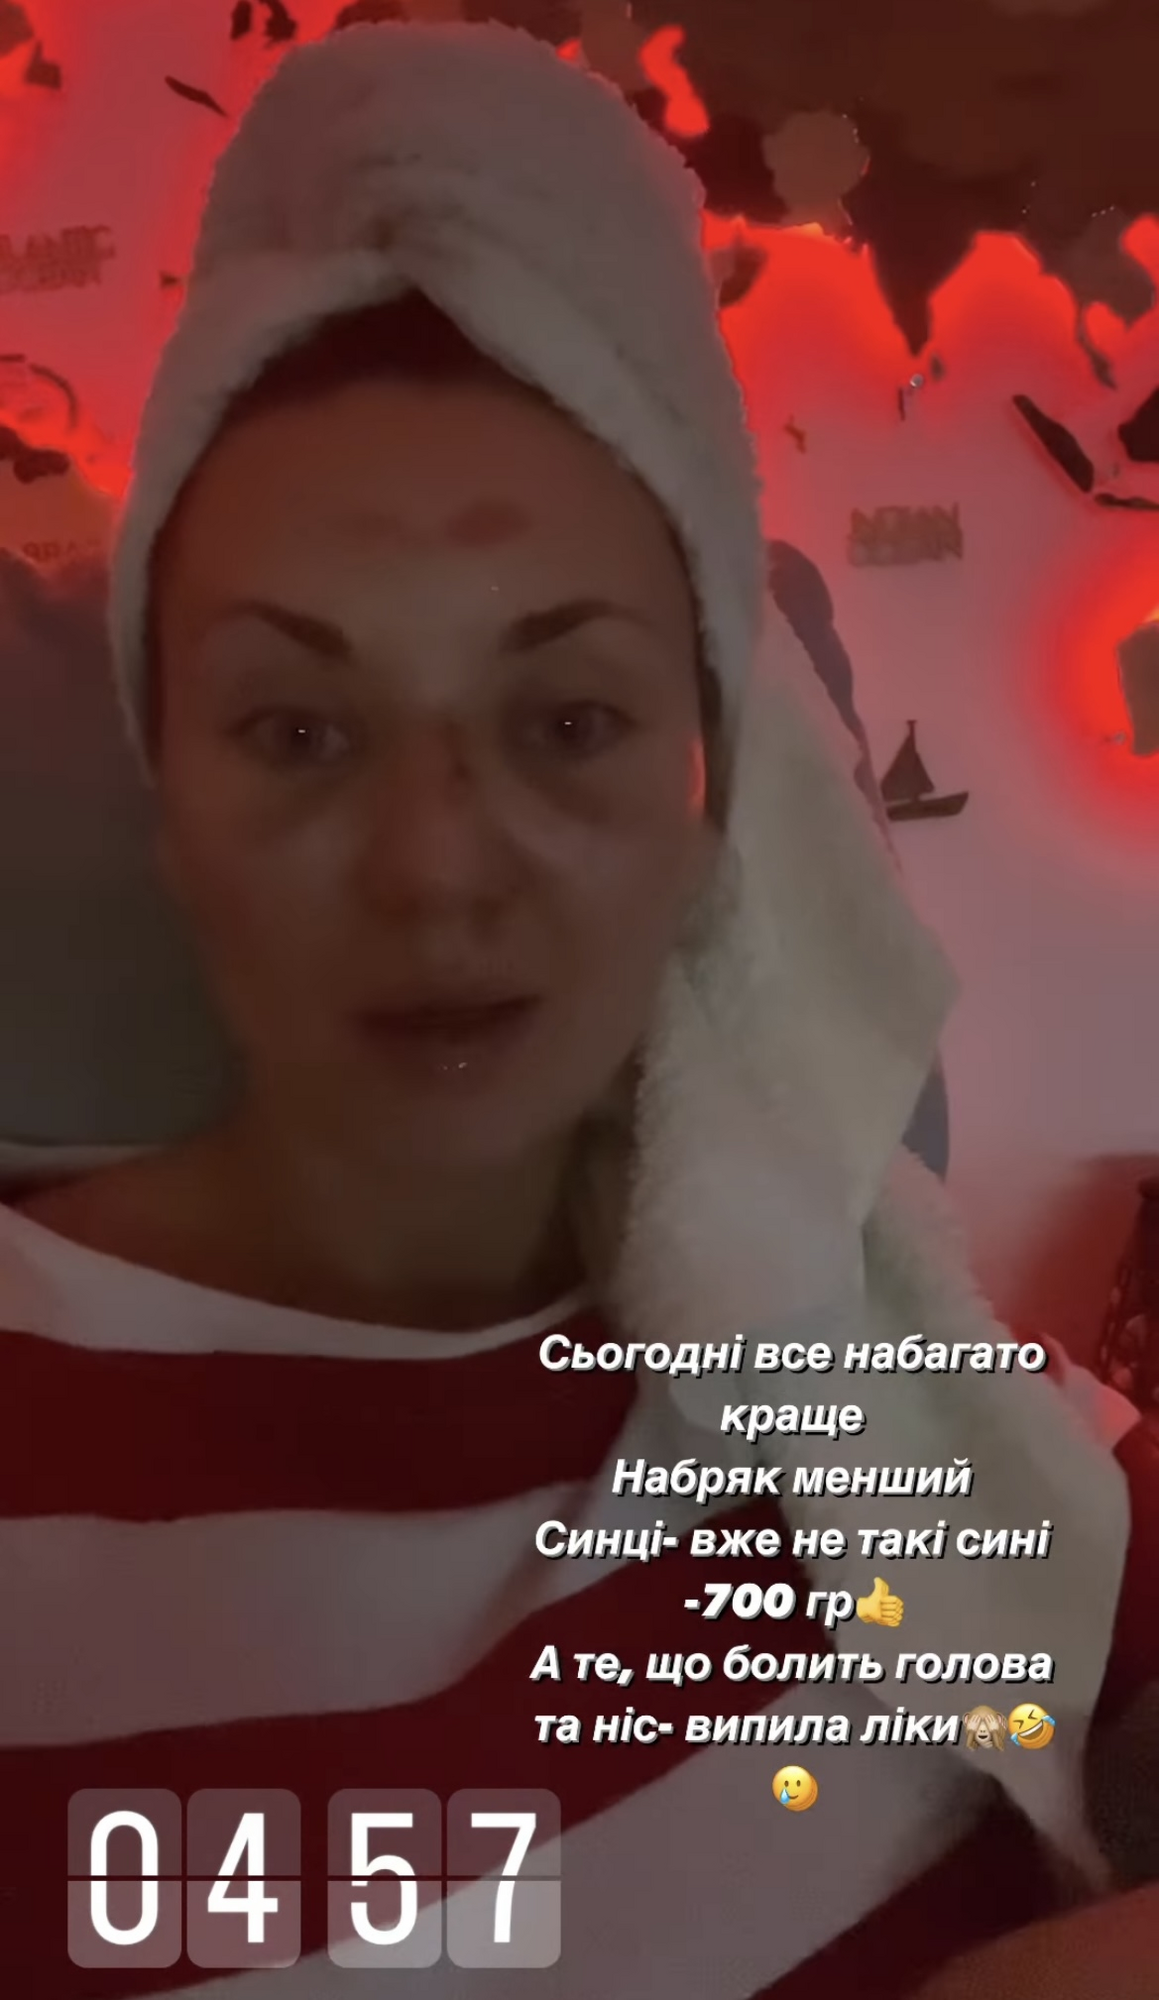 Саливанчук после травмы лица появилась на ТВ и поделились подробностями своего падения: у меня сотрясение мозга и смещение